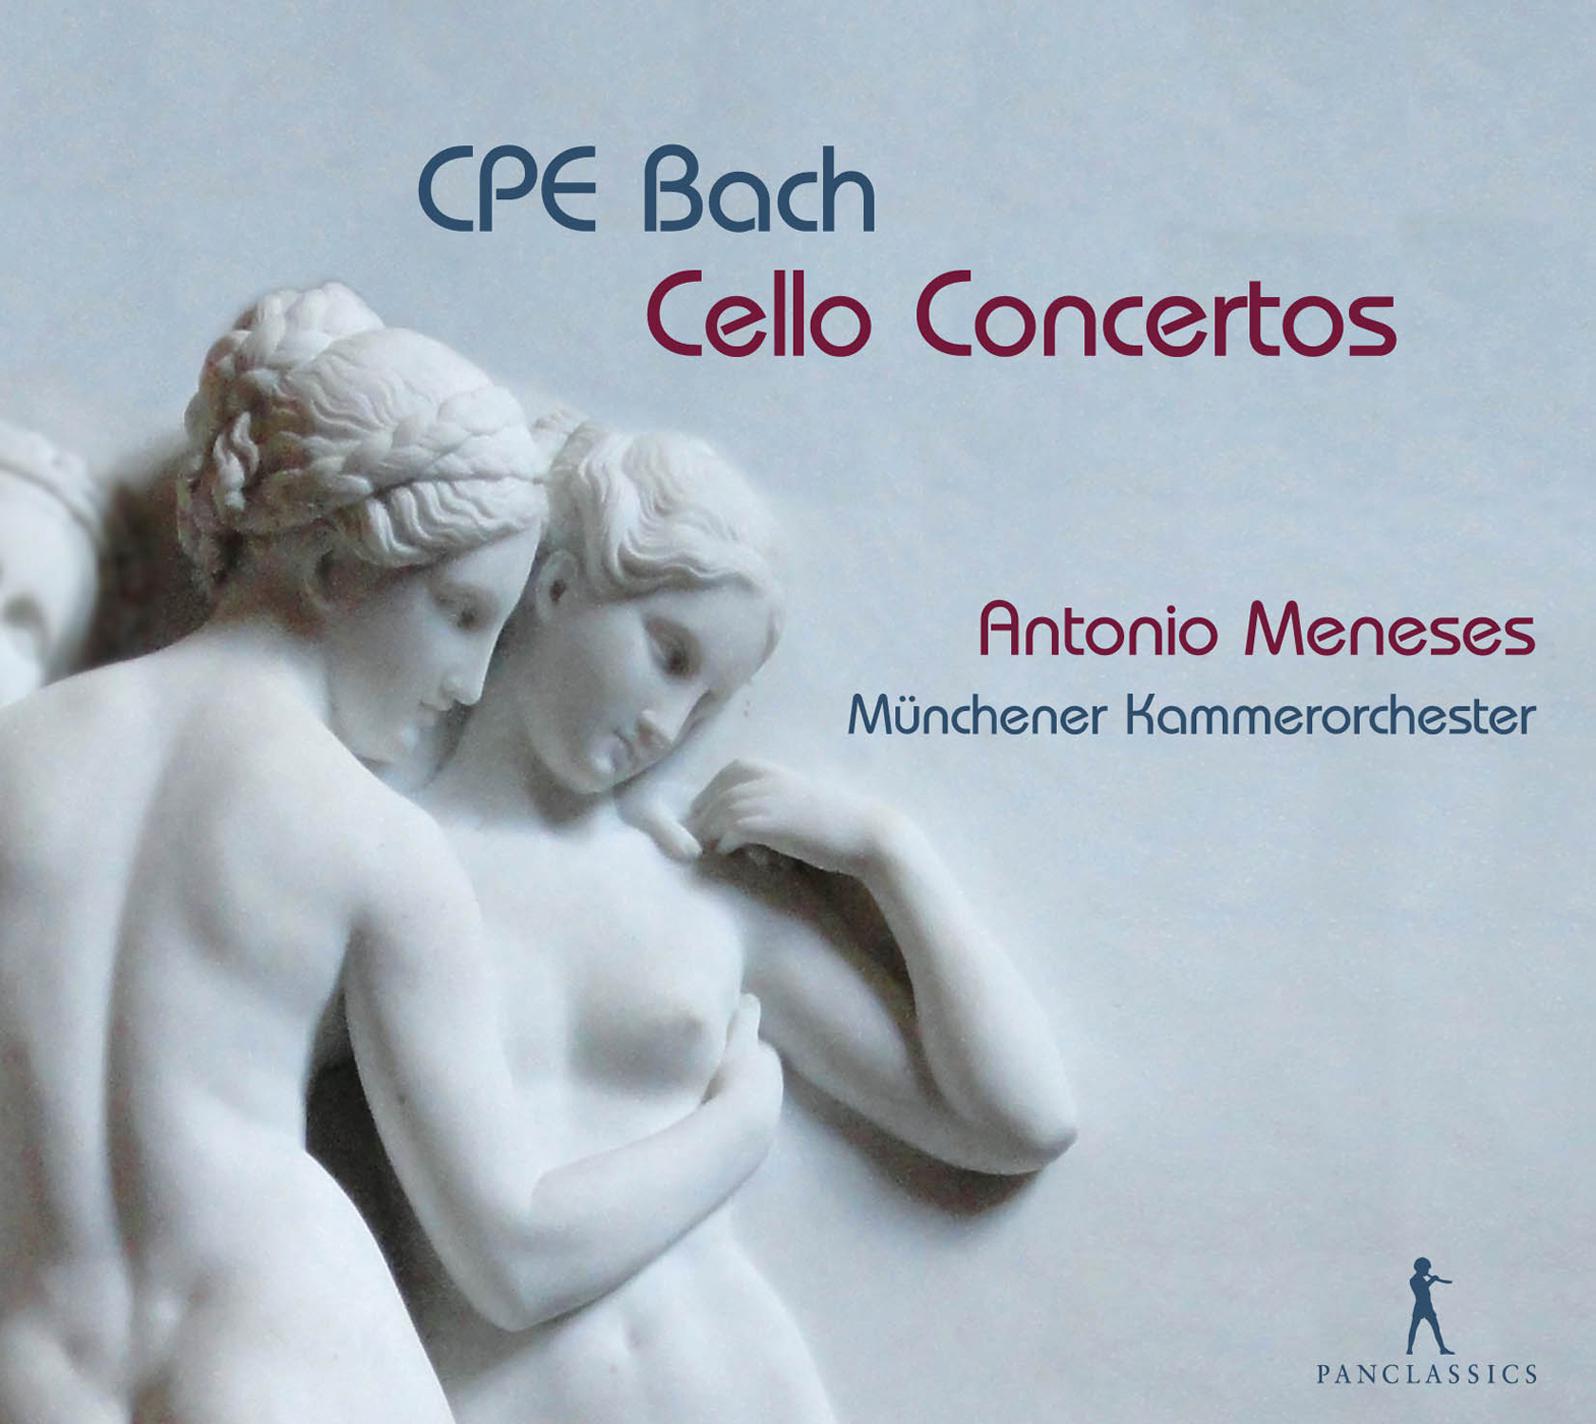 Cello Concerto in A Minor, Wq. 170, H. 432: I. Allegro assai